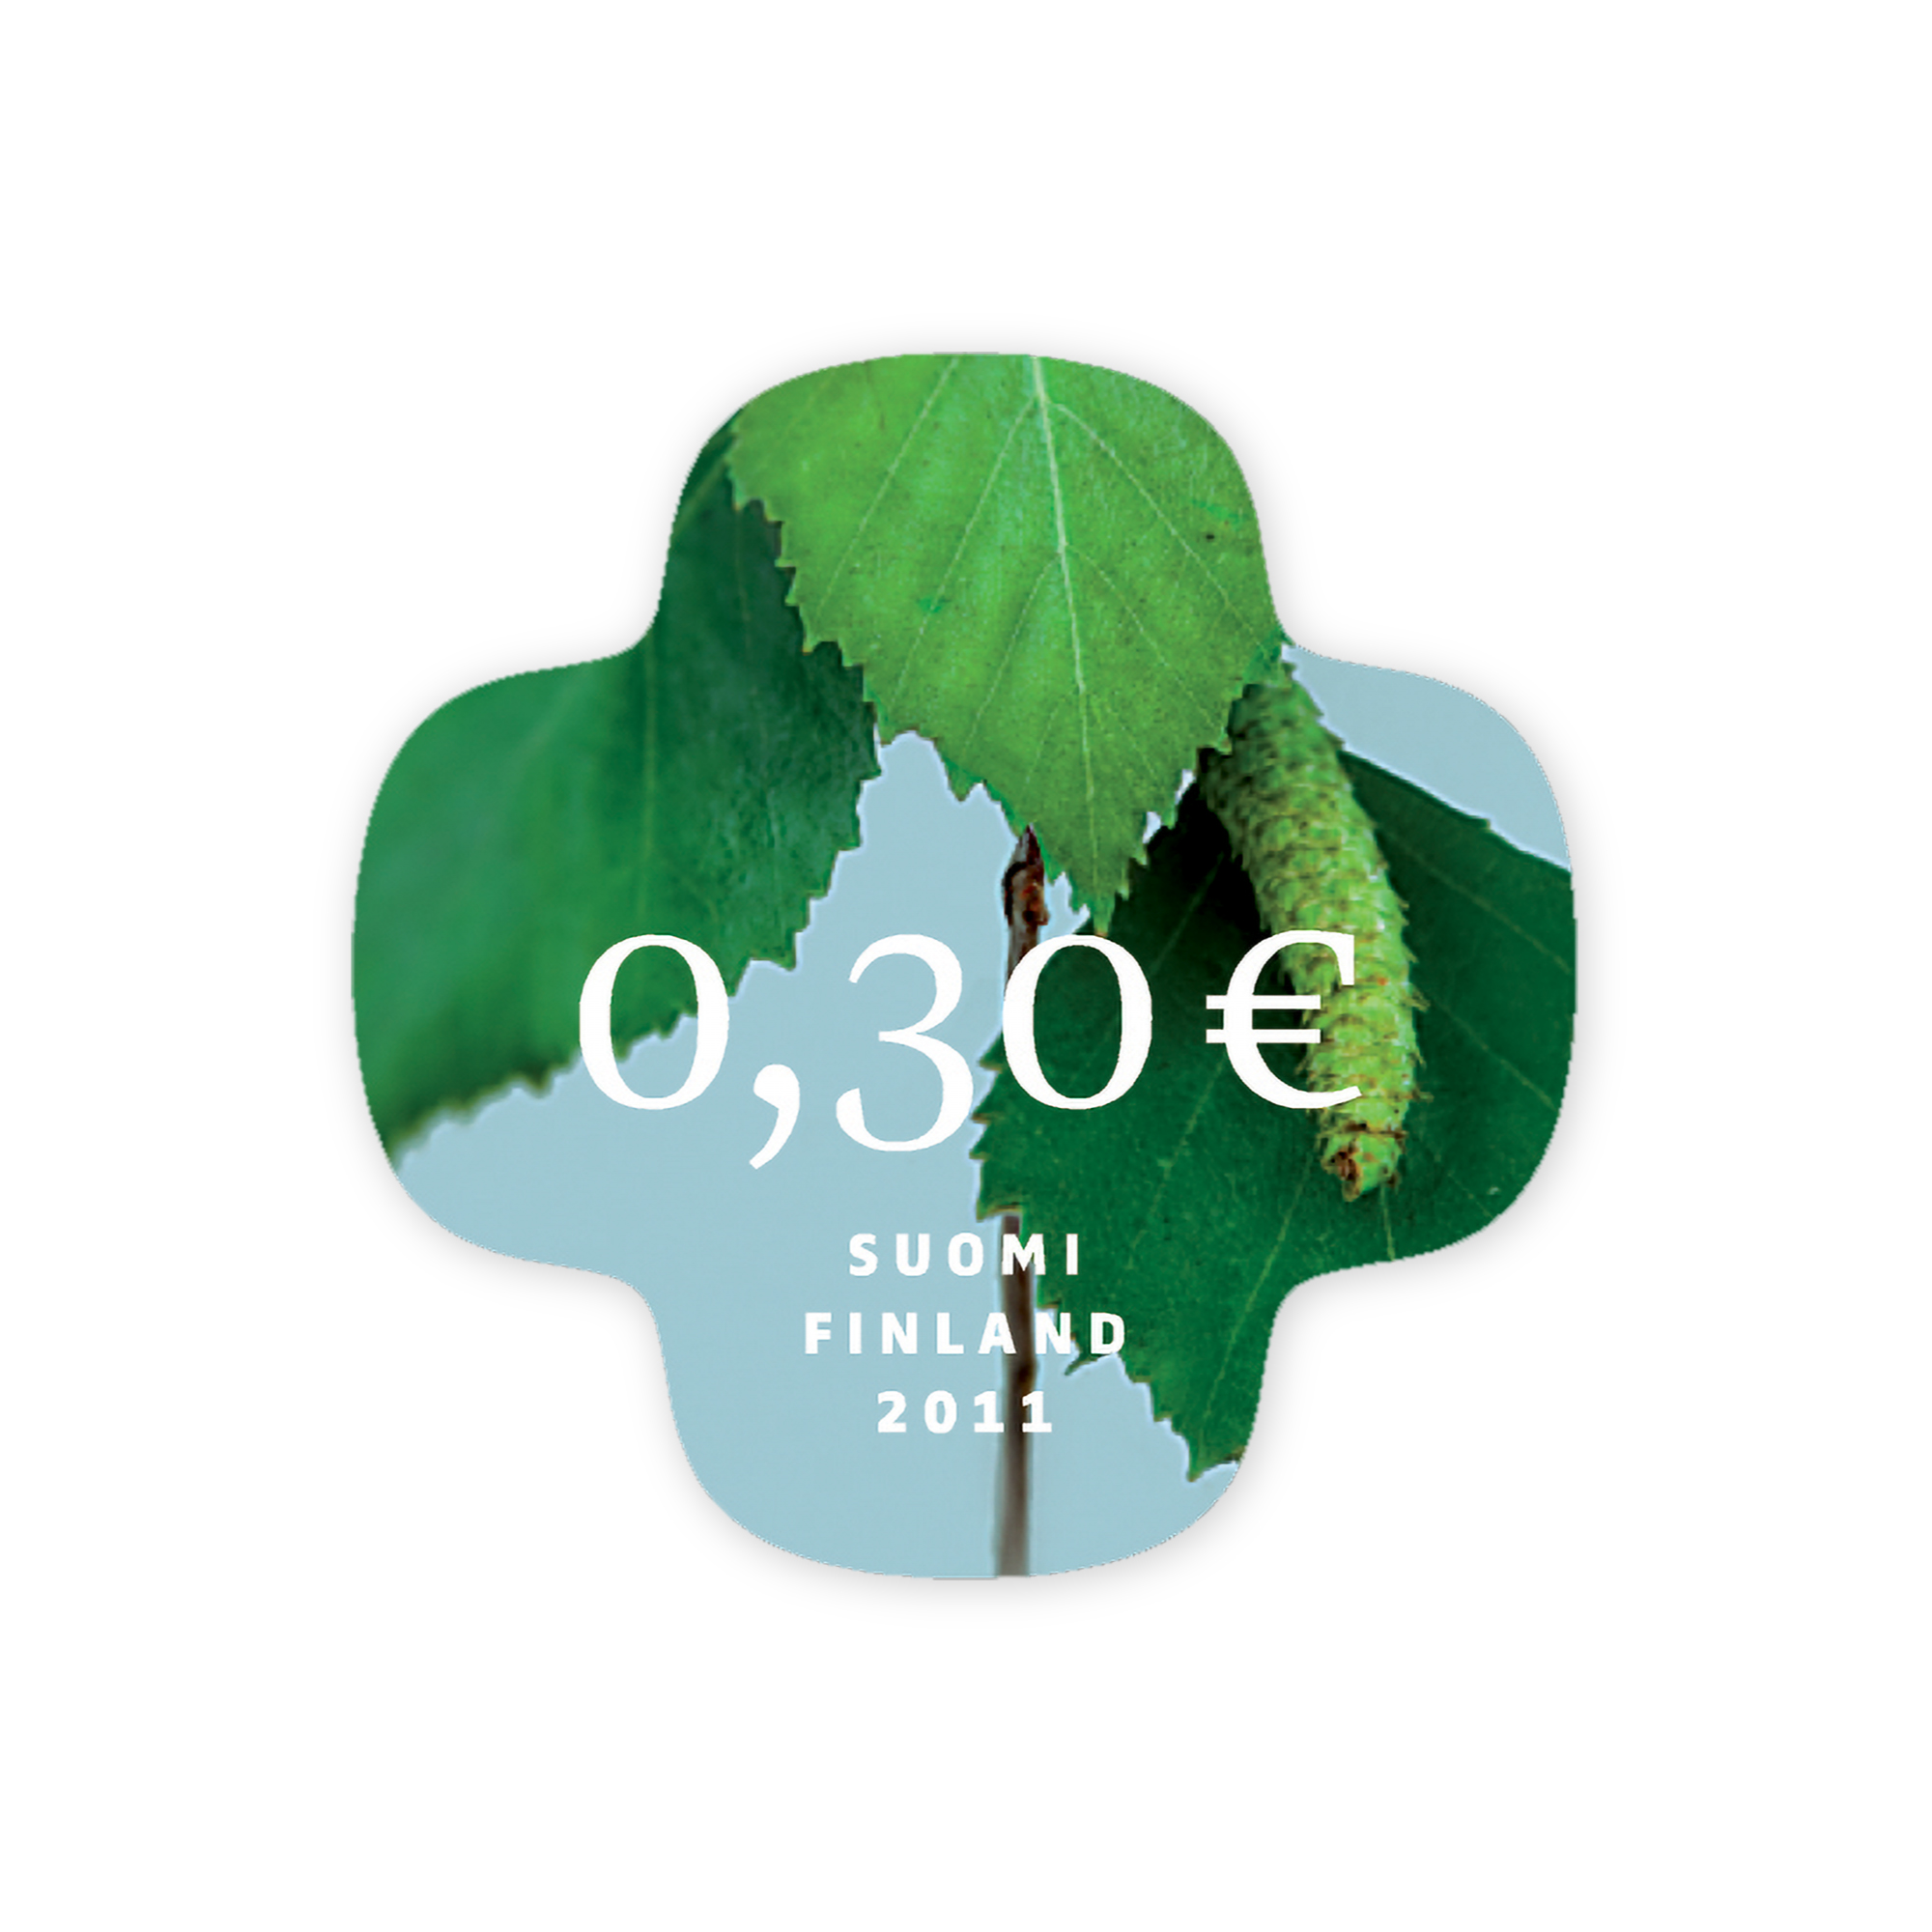 Birch leaf 0,30€